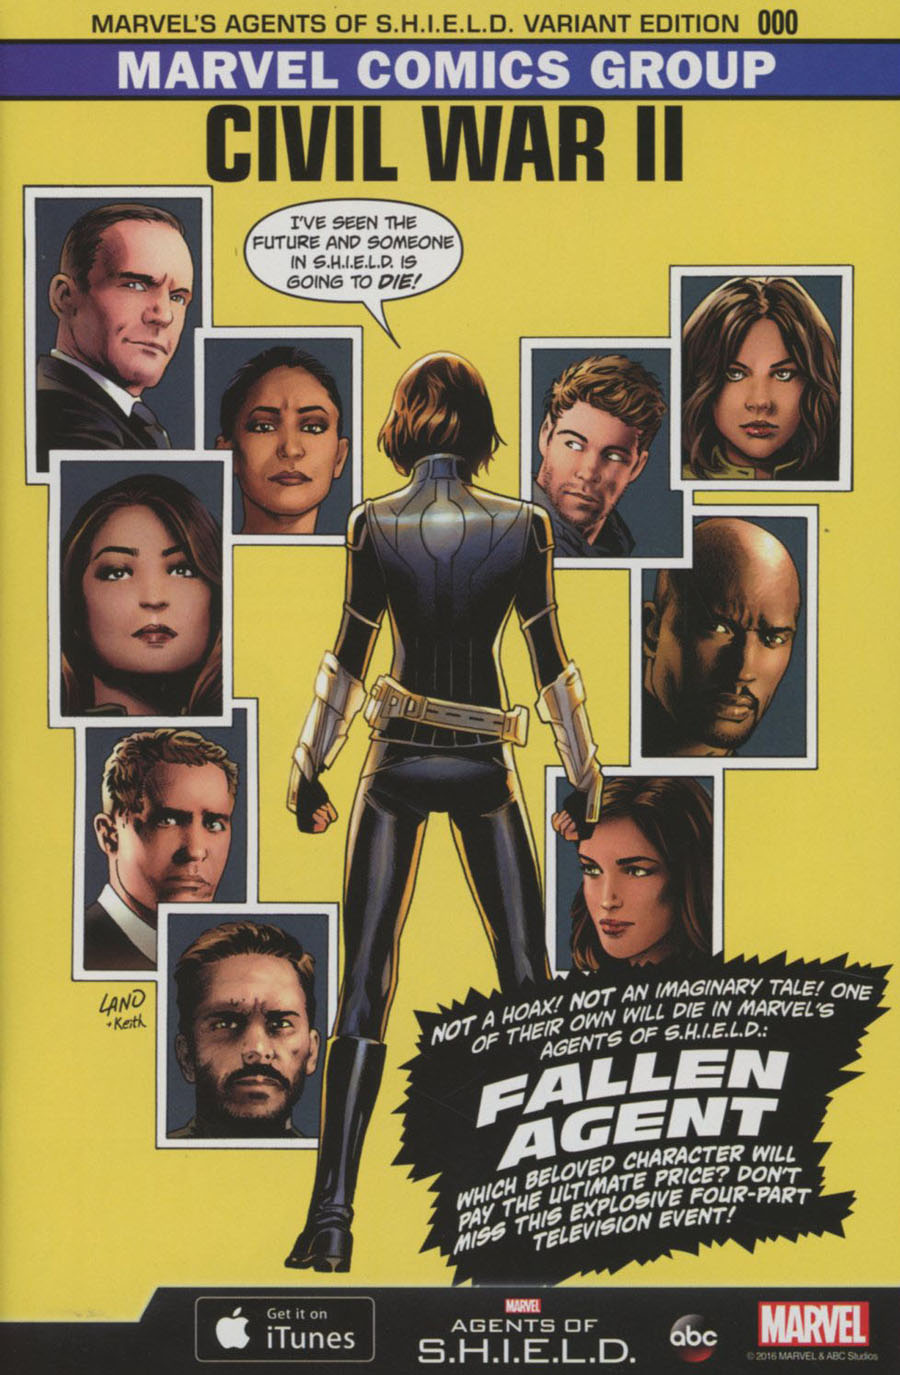 Civil War II #0 Cover E Incentive Greg Land Agents Of S.H.I.E.L.D. Variant Cover (Road To Civil War II Tie-In)